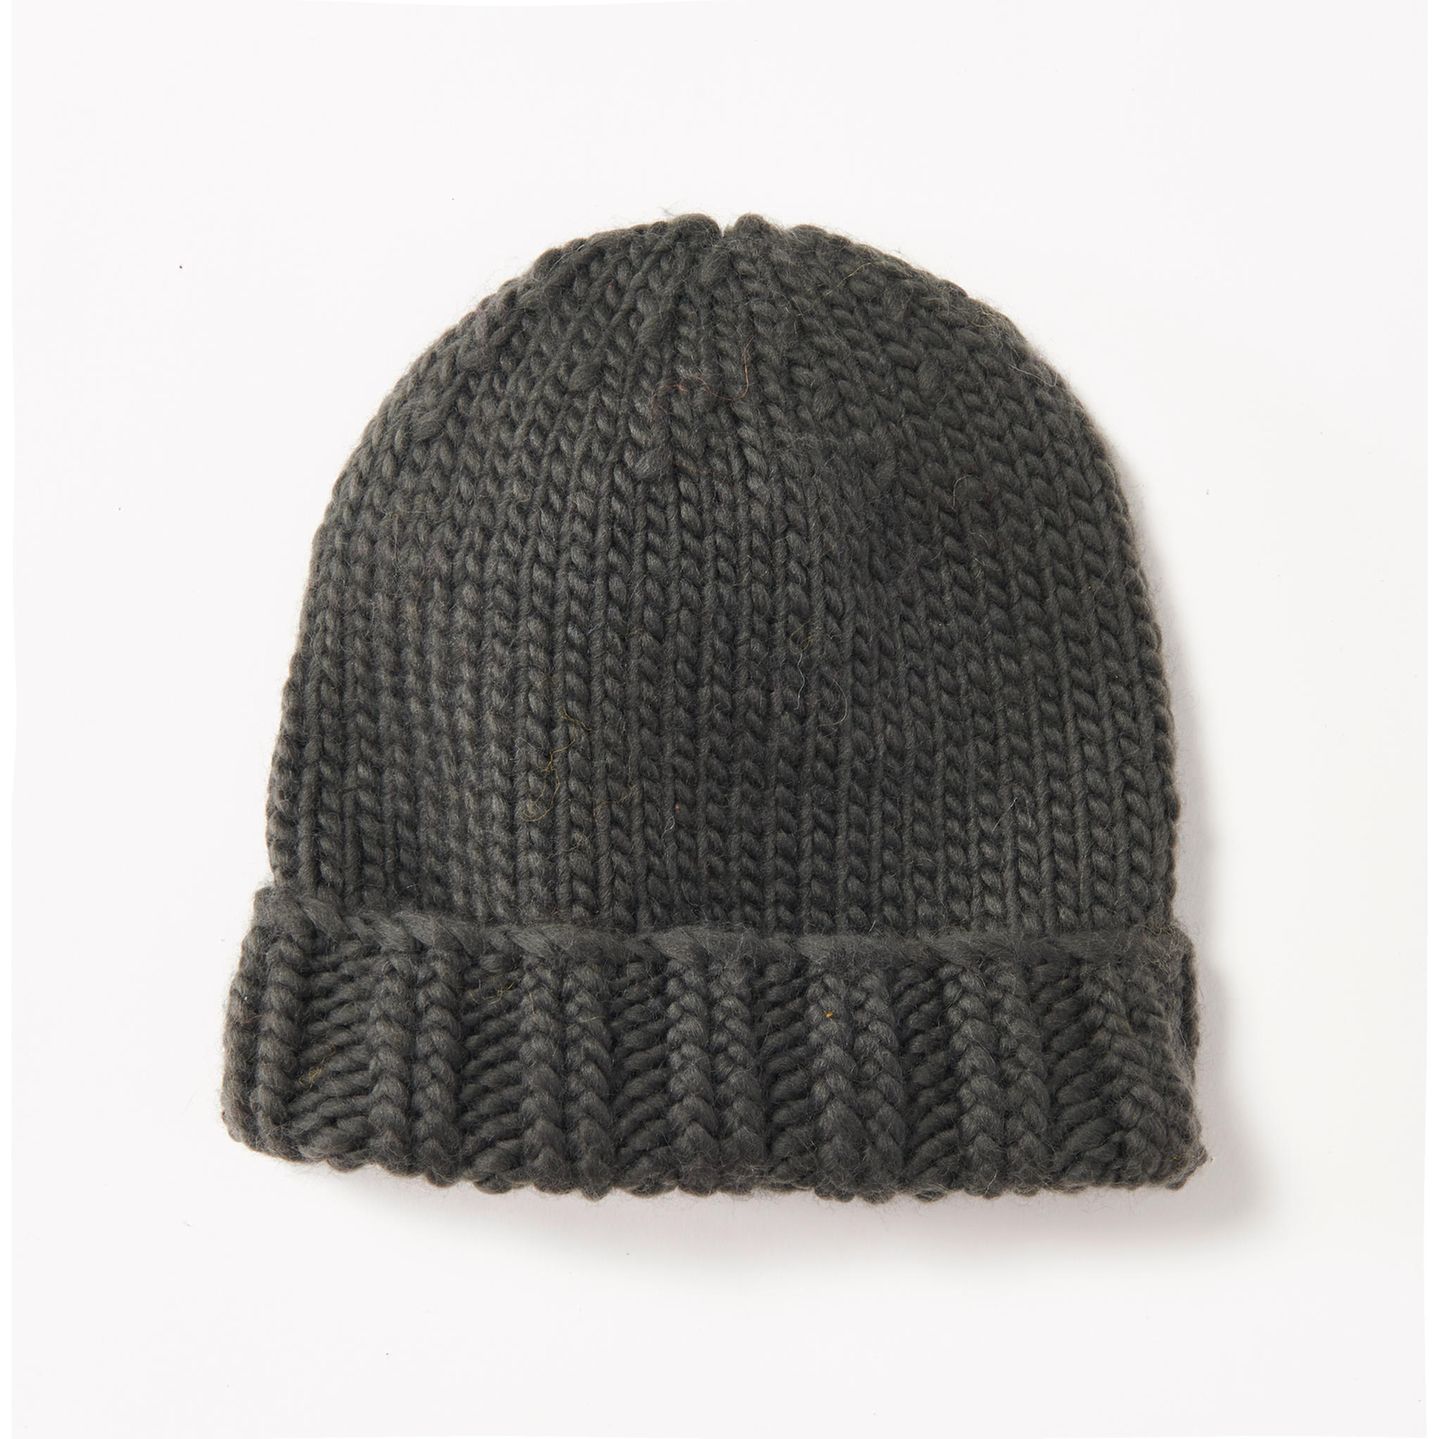 Mütze mit Bund stricken: eine Mütze aus dunkler Wolle